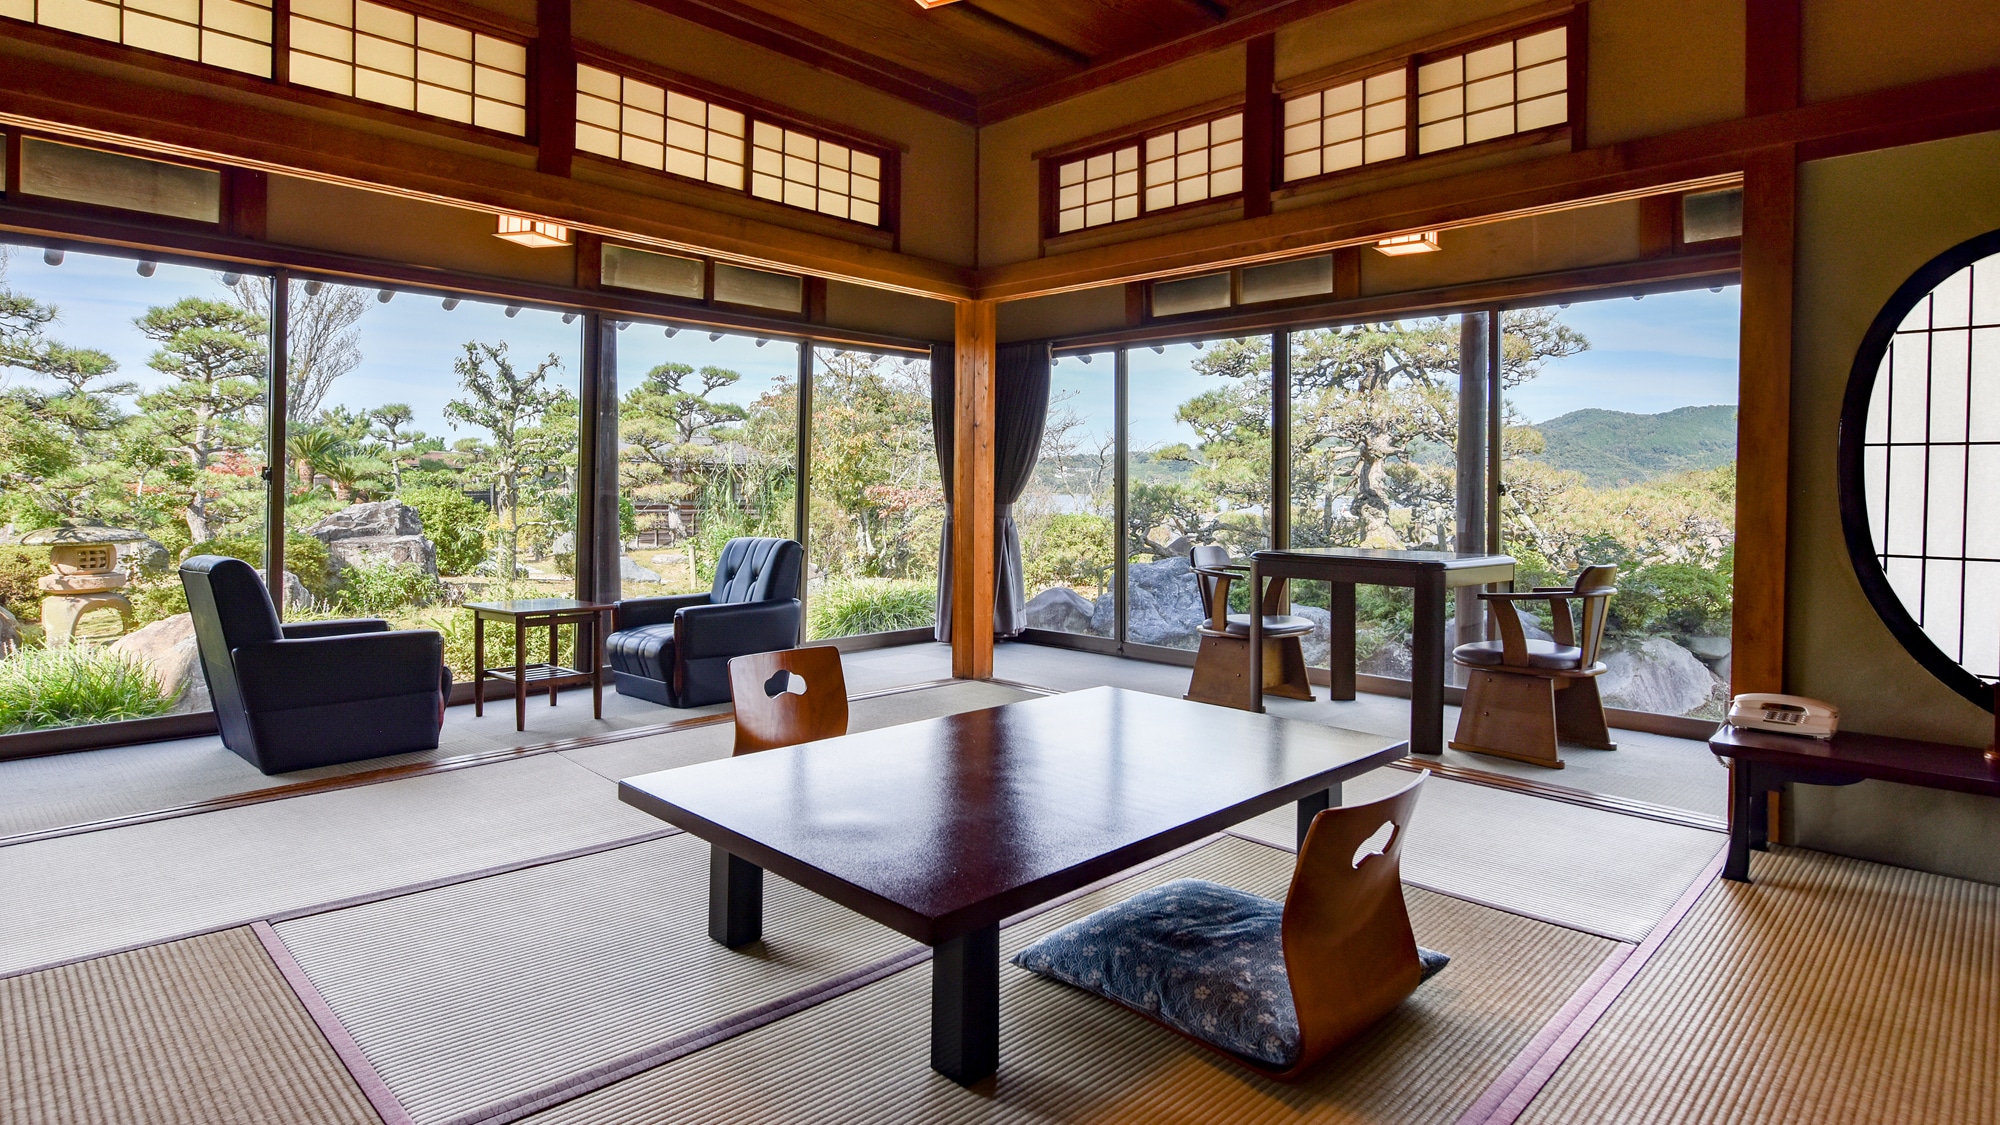 Kamar bergaya Jepang 8 tikar tatami disukai oleh ahli sastra (bagi mereka yang menyukai ruang retro dan kuno) Kamar bebas rokok